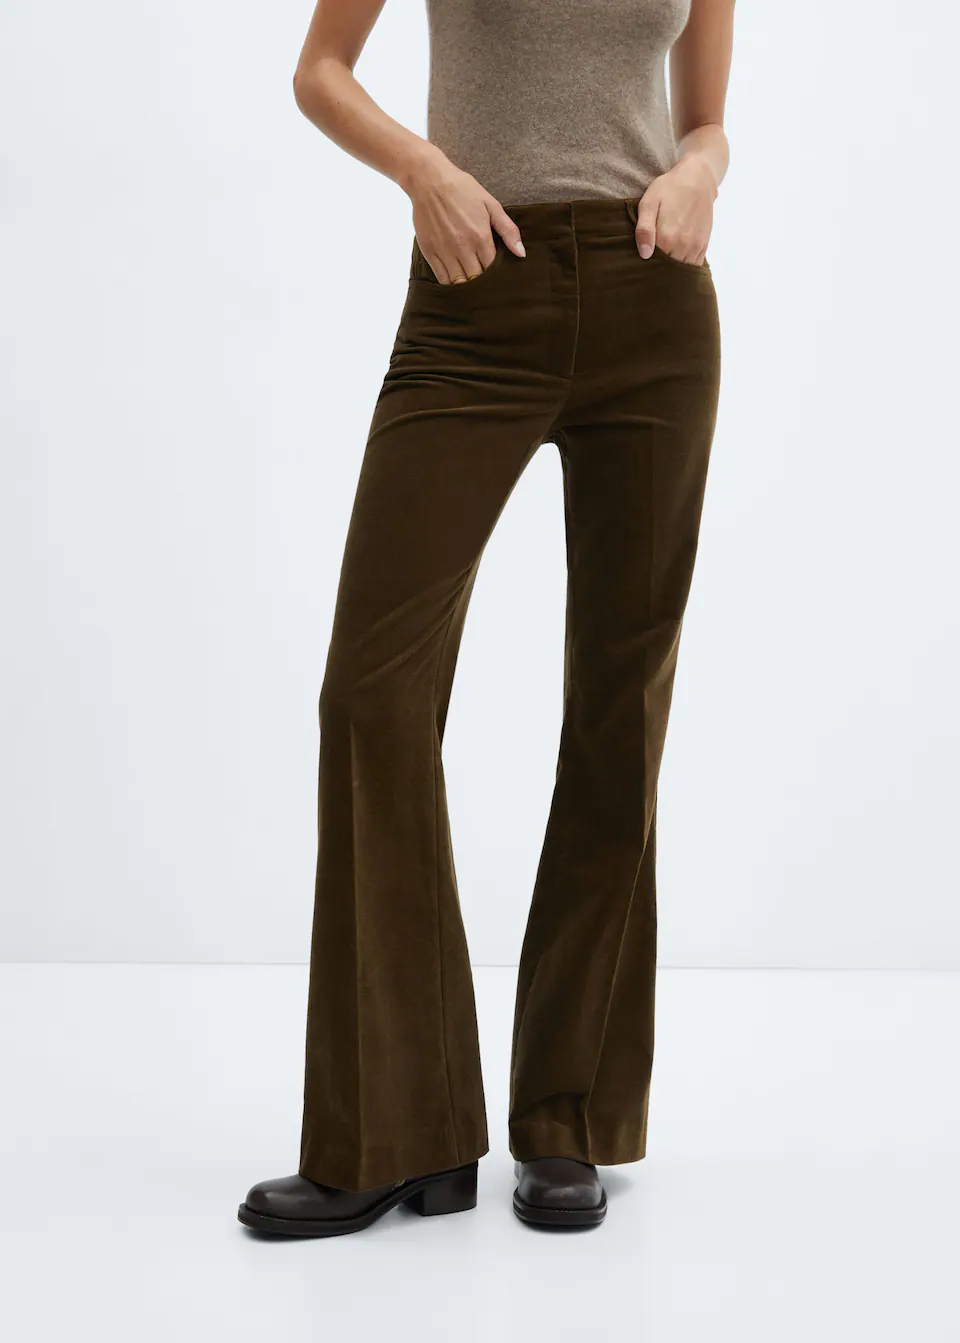 Tailleur pantalon automne-hiver 2023-2024 : 22 pantalons tendance à shopper  - Femme Actuelle